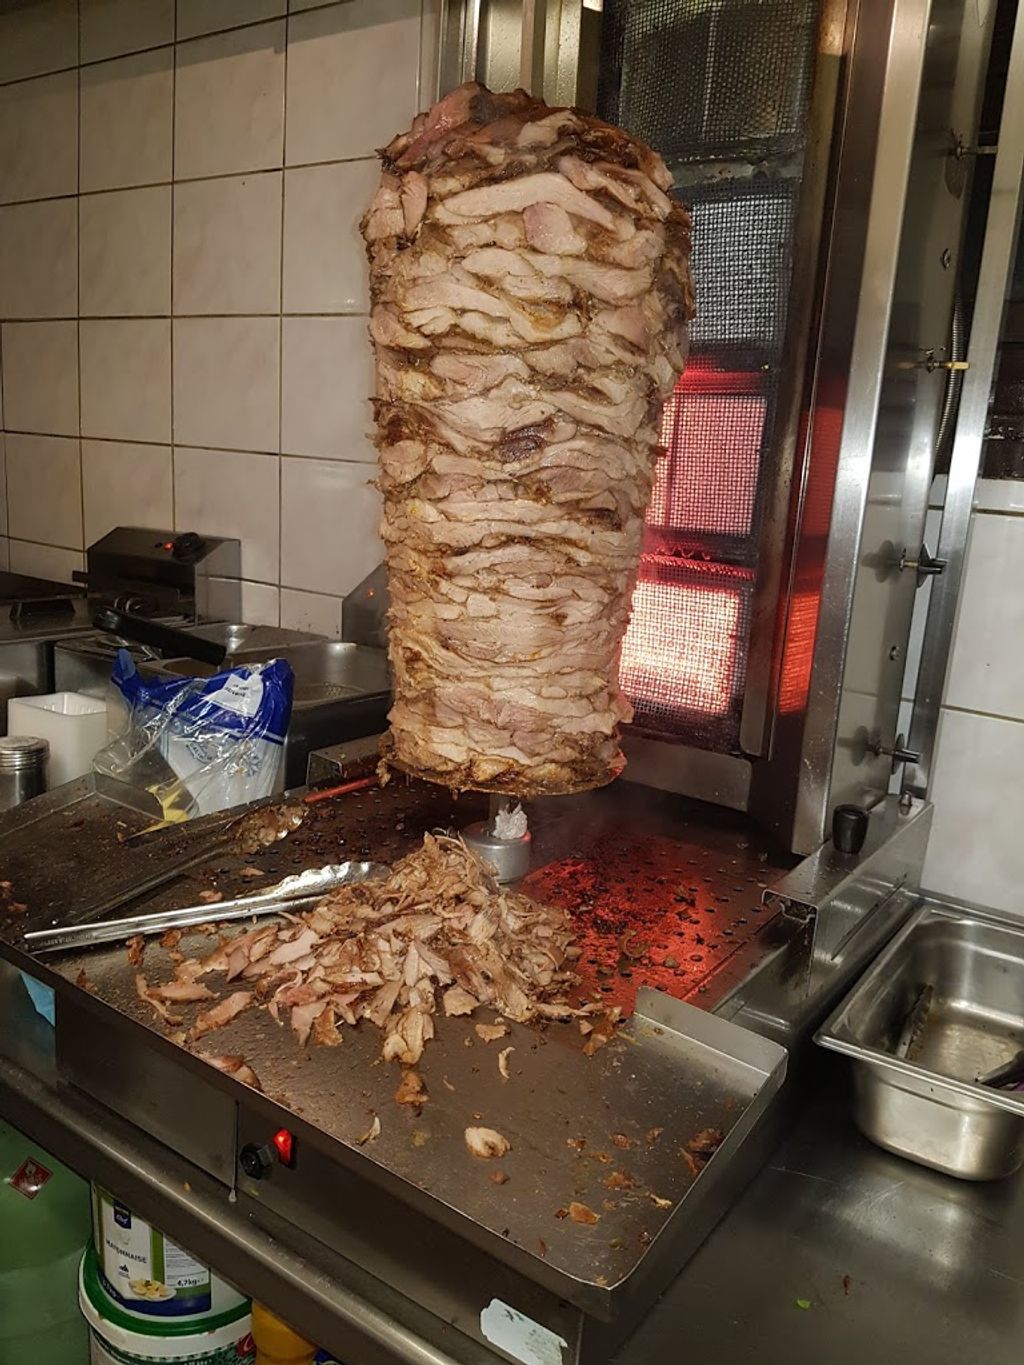 L'lSTANBUL KEBAB / BURGER RESTAURANT Burger Moutiers - Shawarma Kokoretsi Food Dish Street food